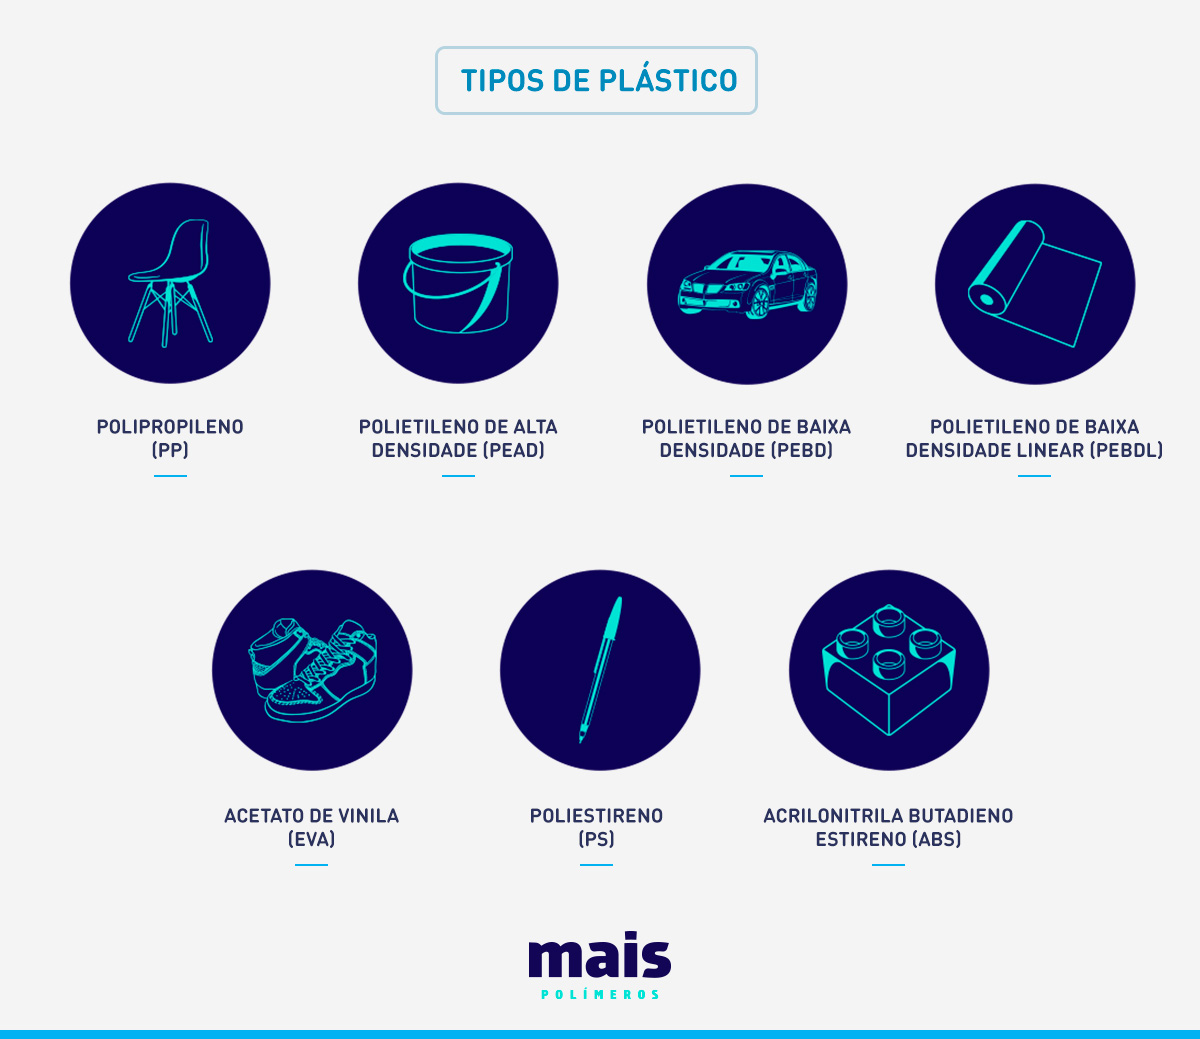 Principais tipos de plástico produzidos pela indústria de plásticos